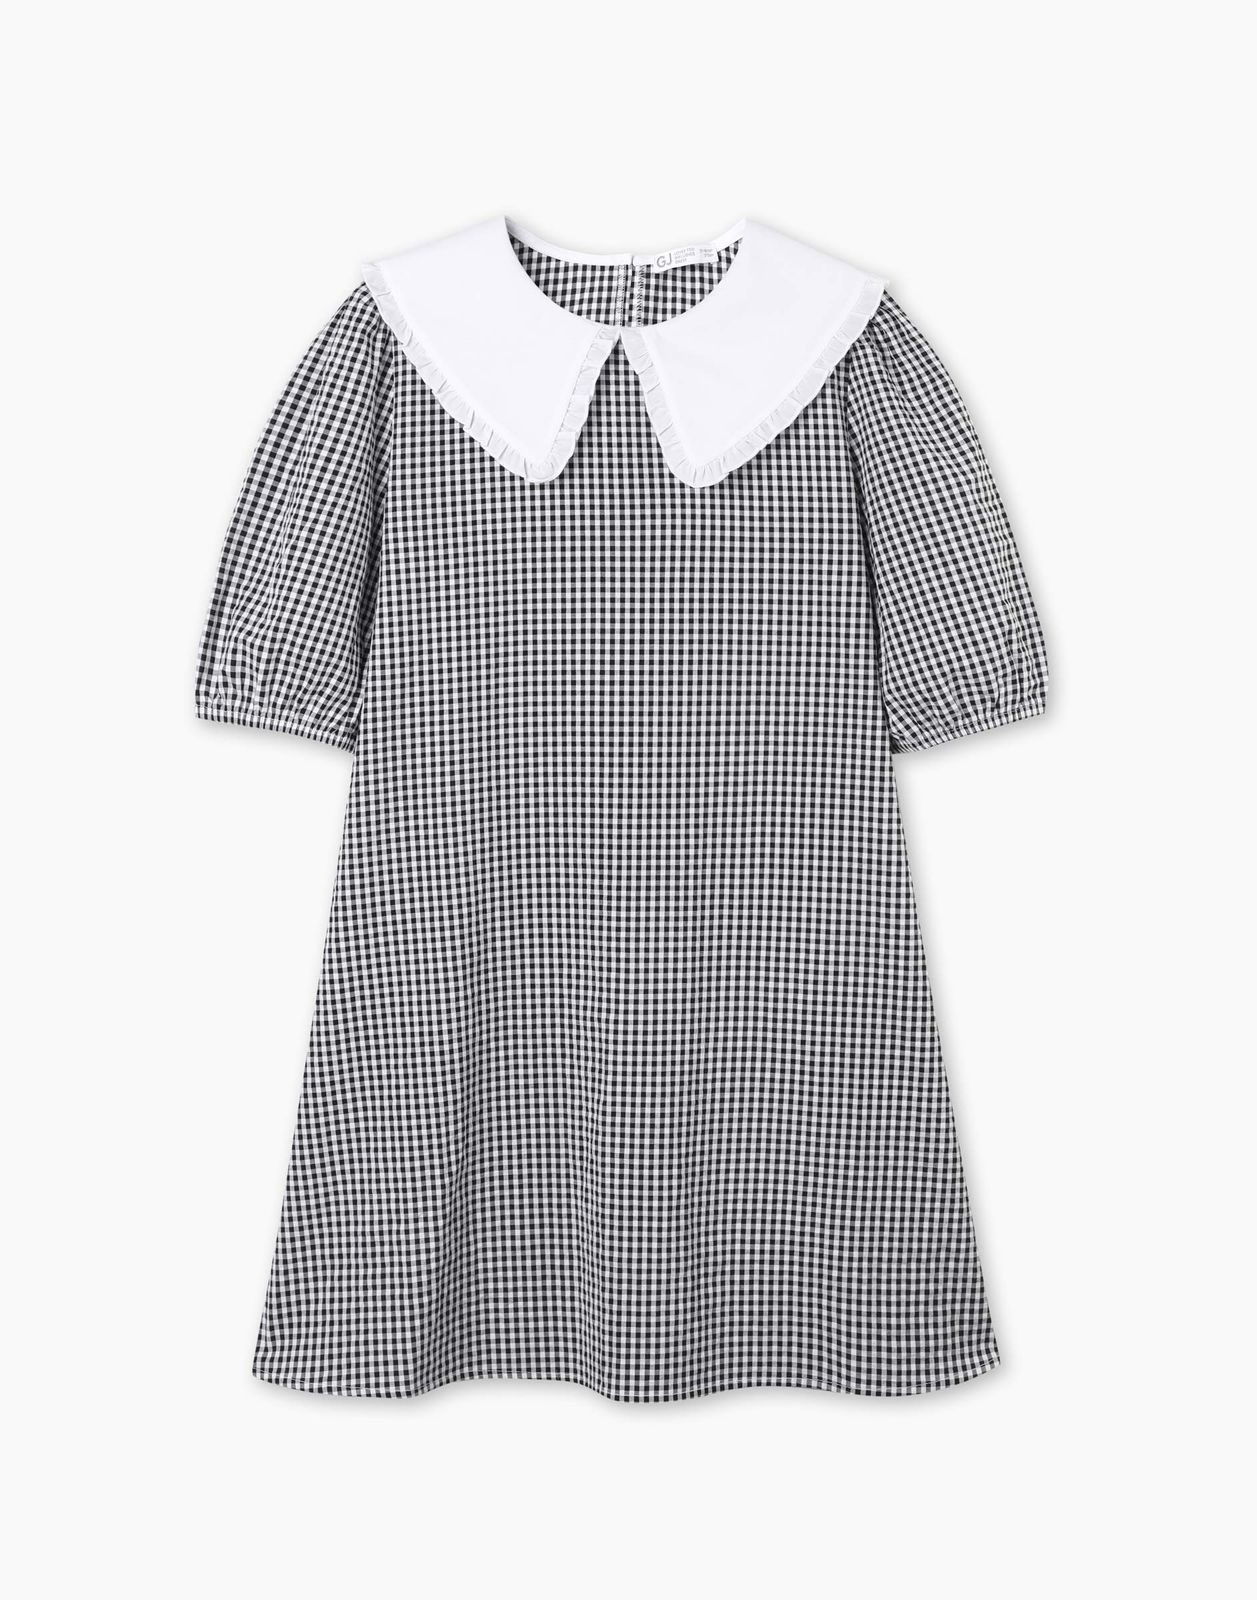 Платье детское Gloria Jeans GDR028214, белый/черный, 140